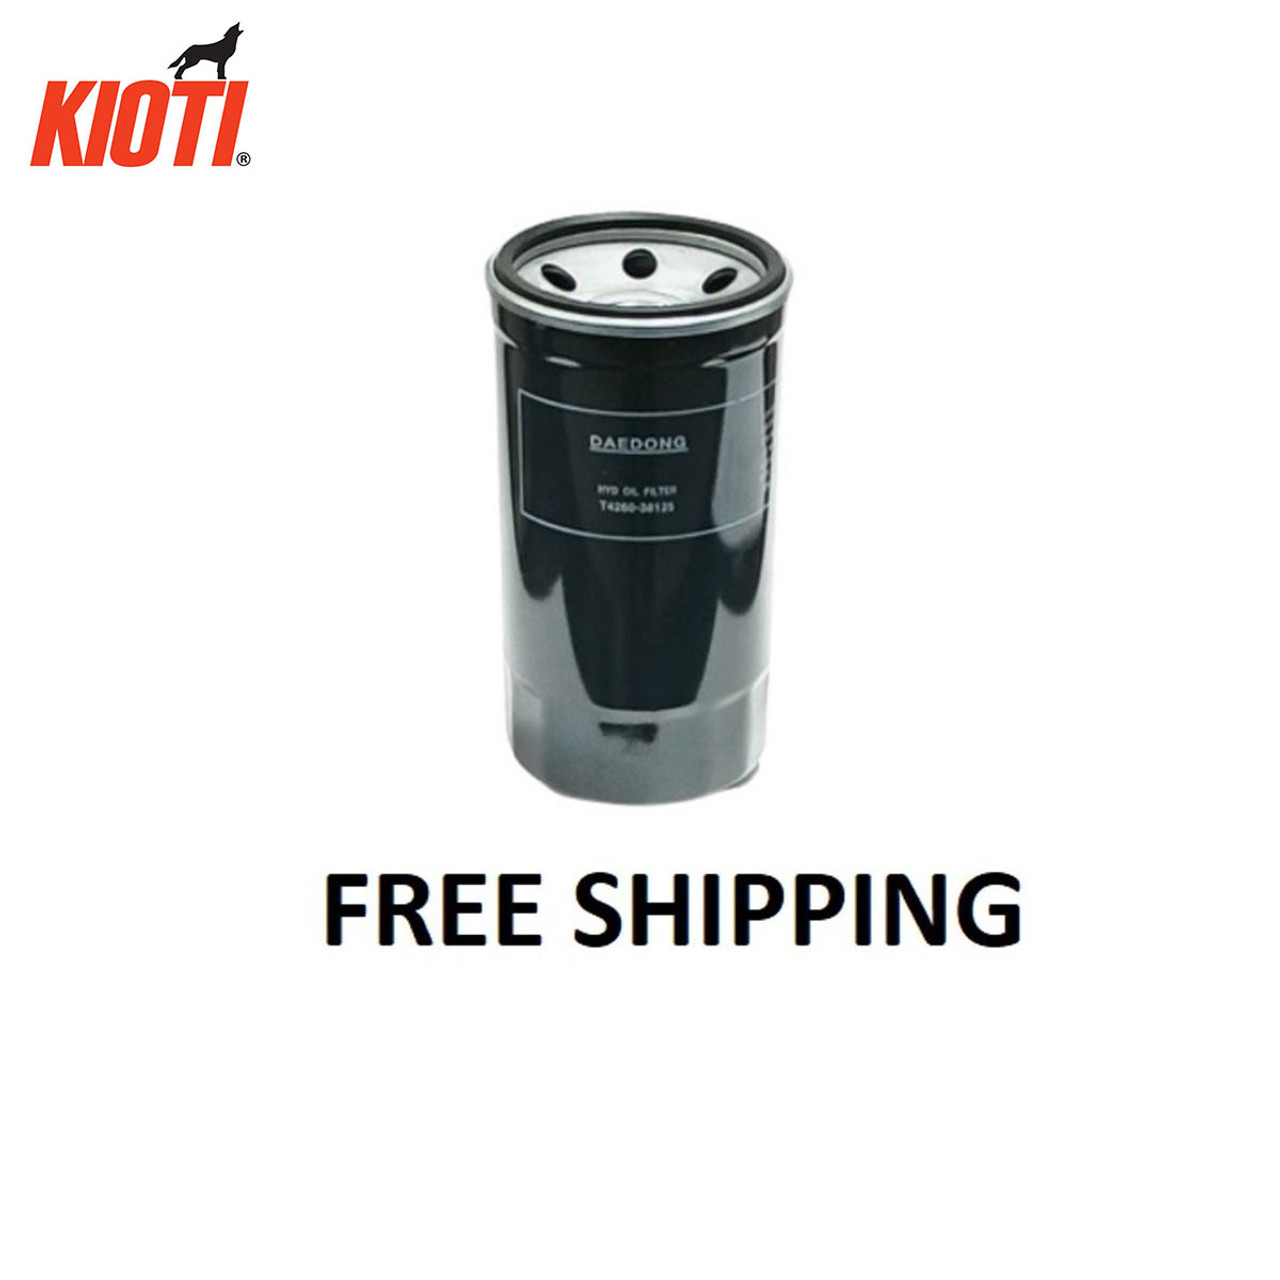 Kioti Hydraulic Filter CK, CK-SE, CX-Series P/N: T4260-38125